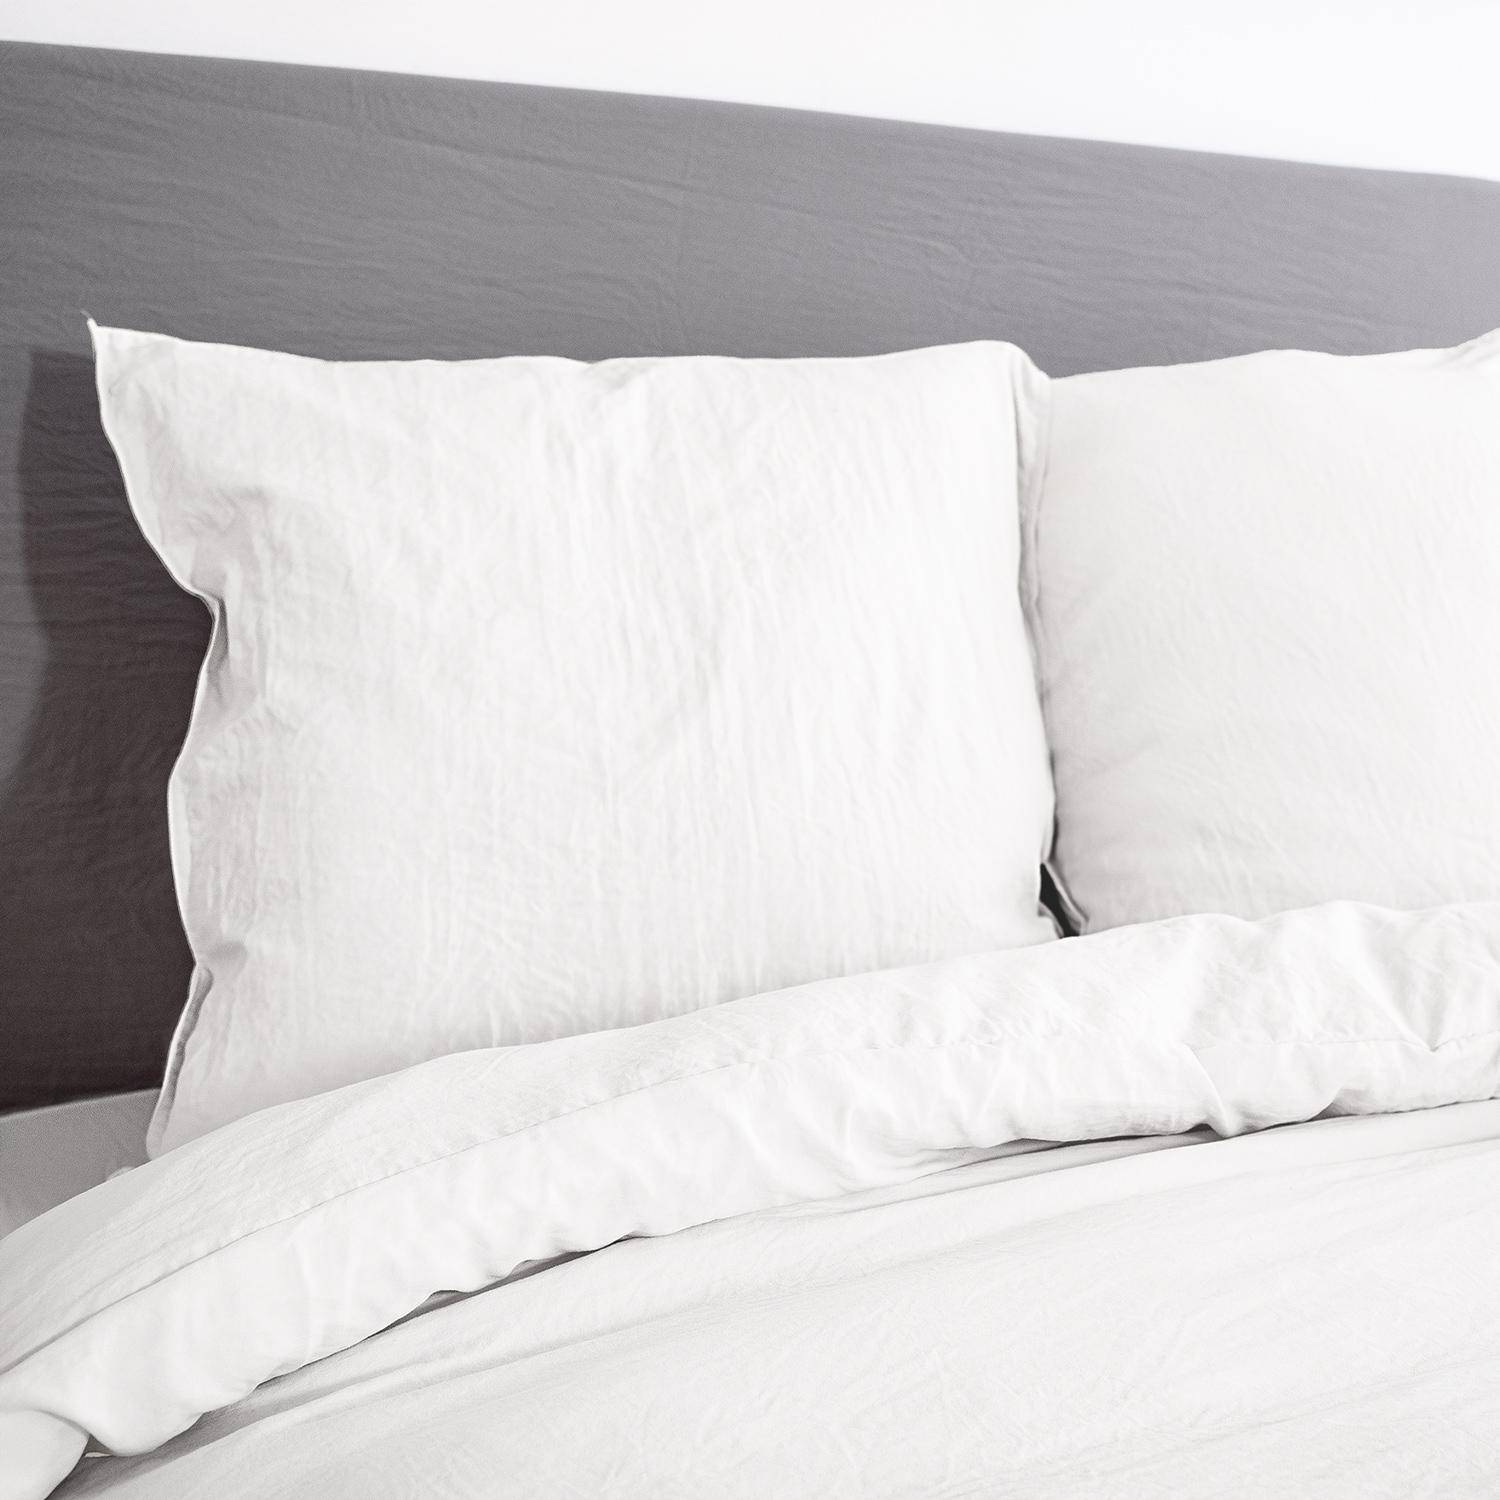 Parure de lit en microfibre lavée, blanc, 240 x 220cm pour lit 2 places avec 1 housse de couette et 2 taies d'oreillers,sweeek,Photo2